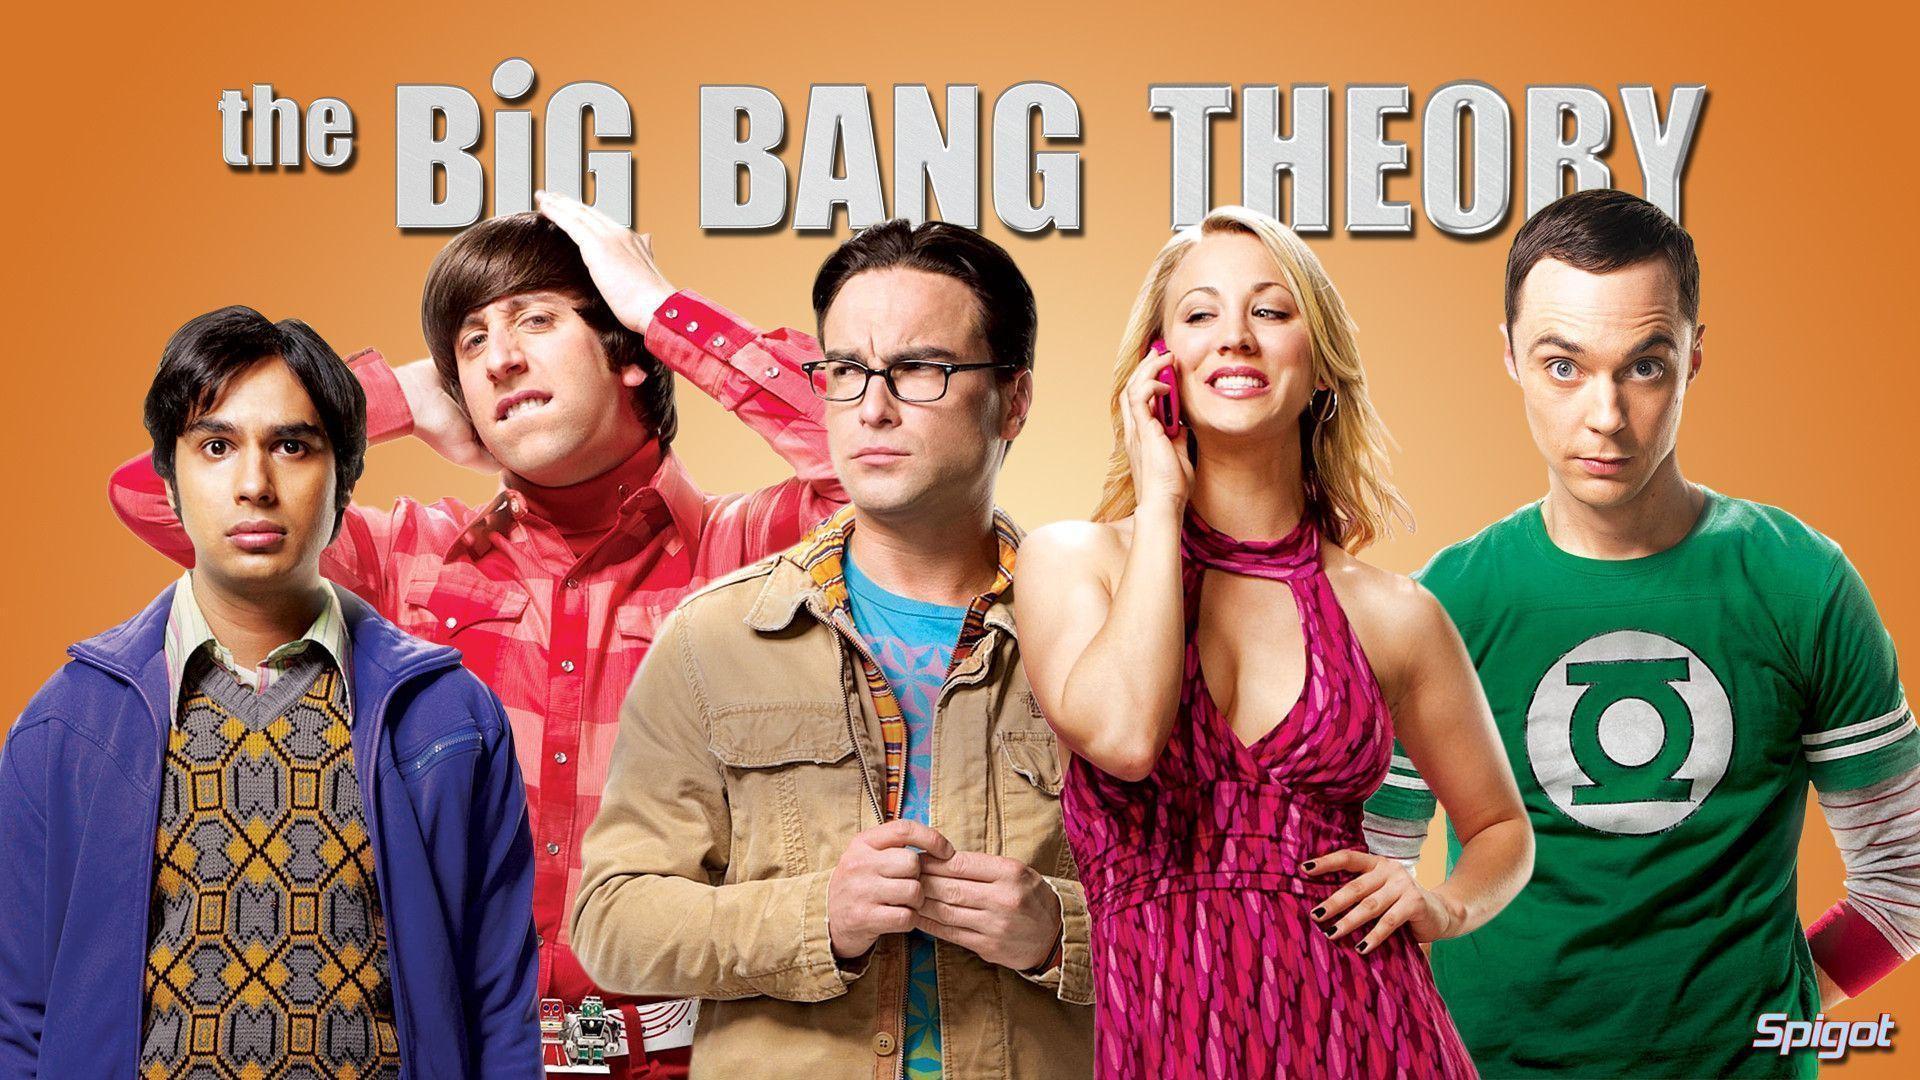 The Big Bang Theory Wallpaper. The Big Bang Theory Background